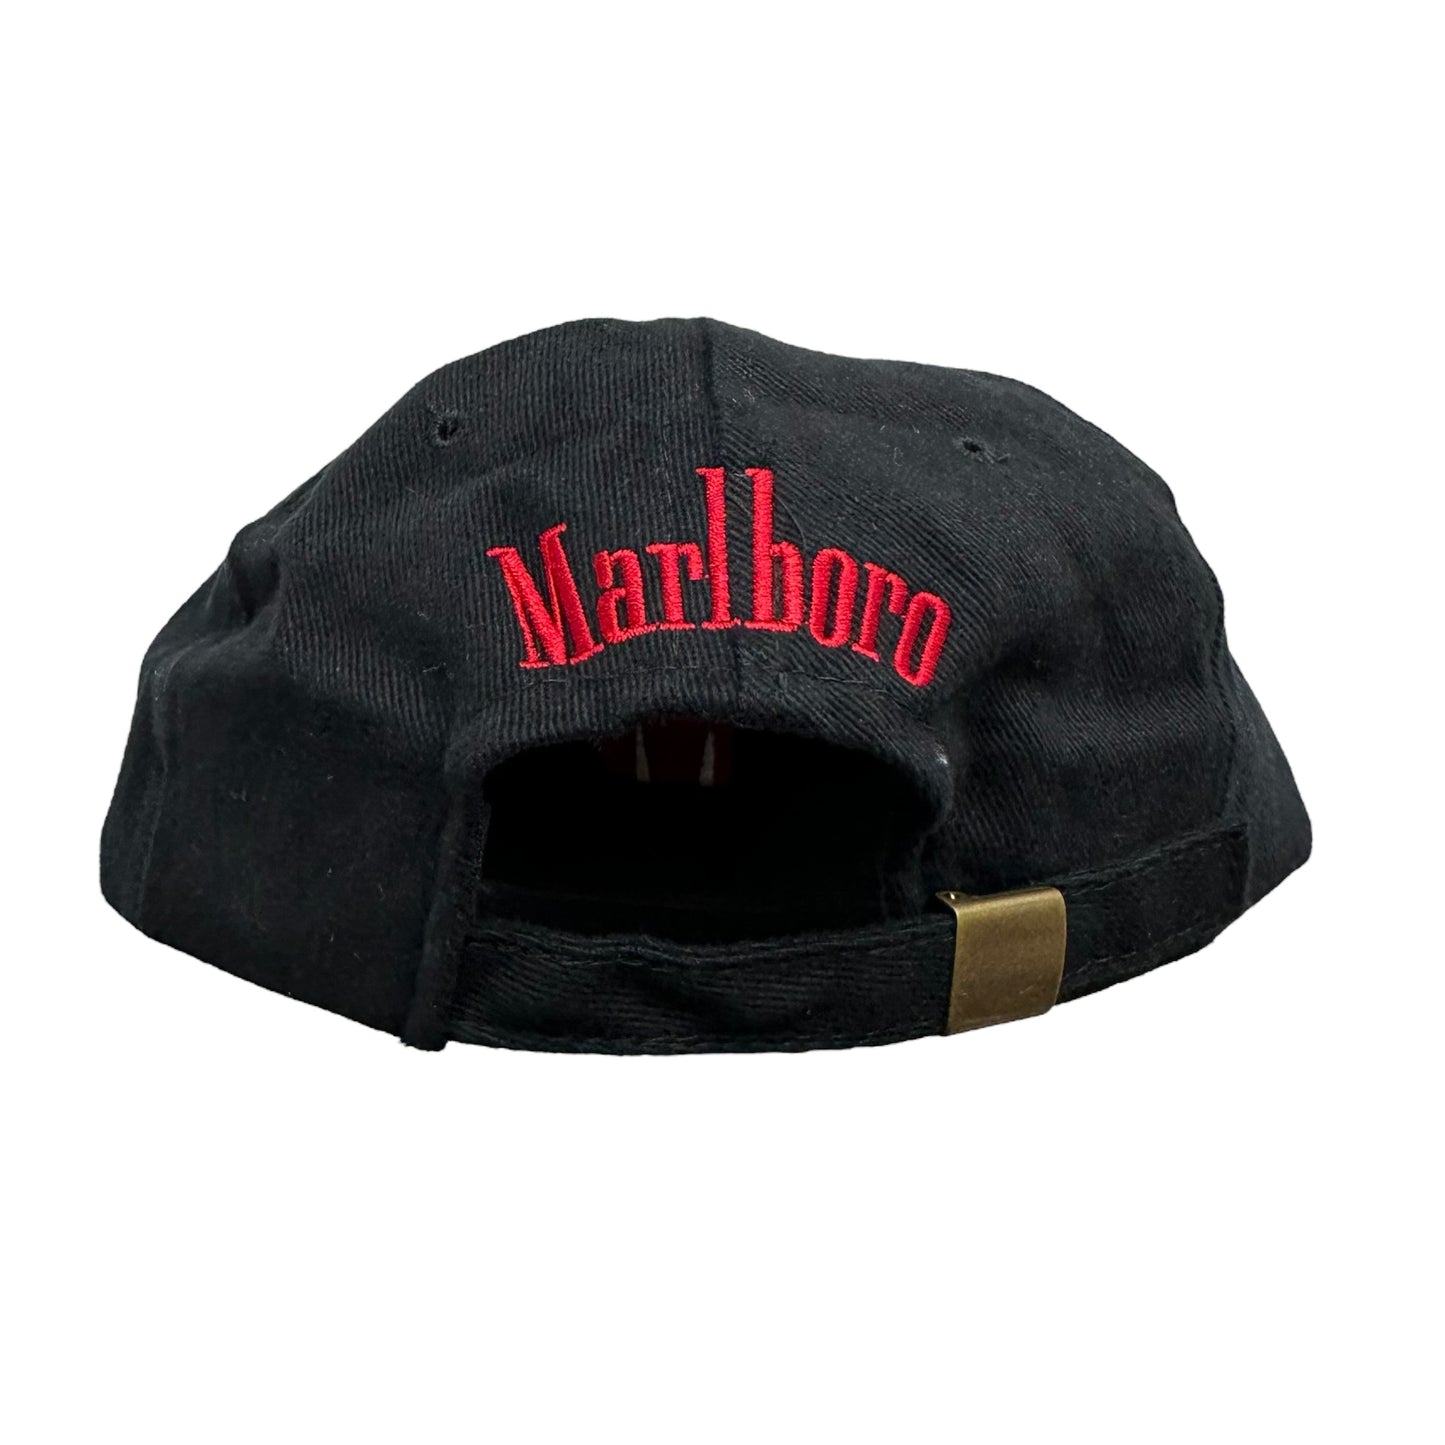 Vintage Marlboro Cigarettes Black Strap Back Hat